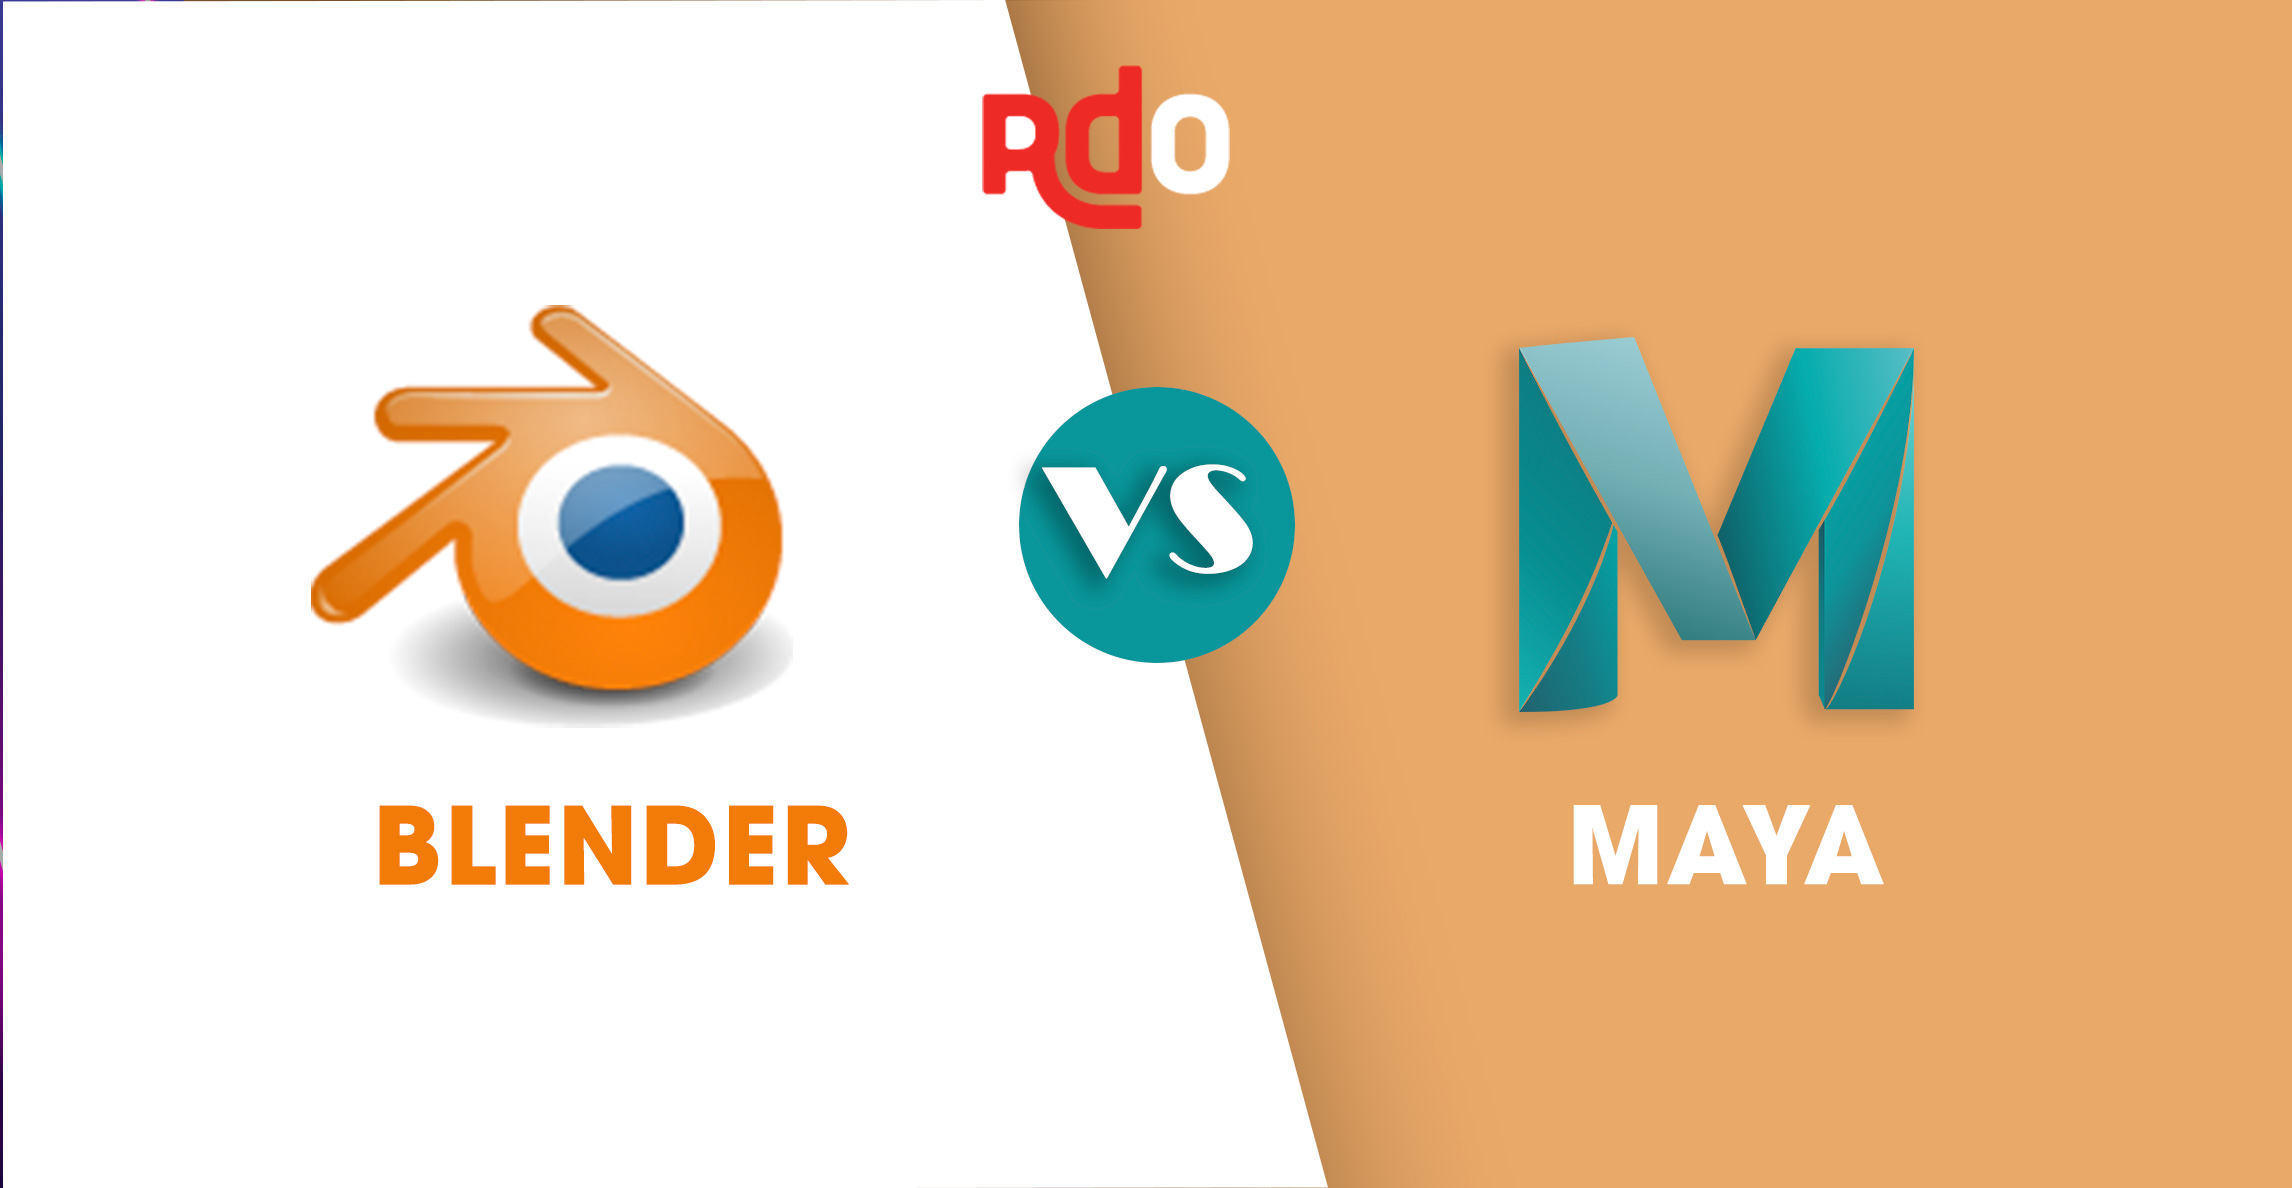 3D software comparison: Blender vs Maya